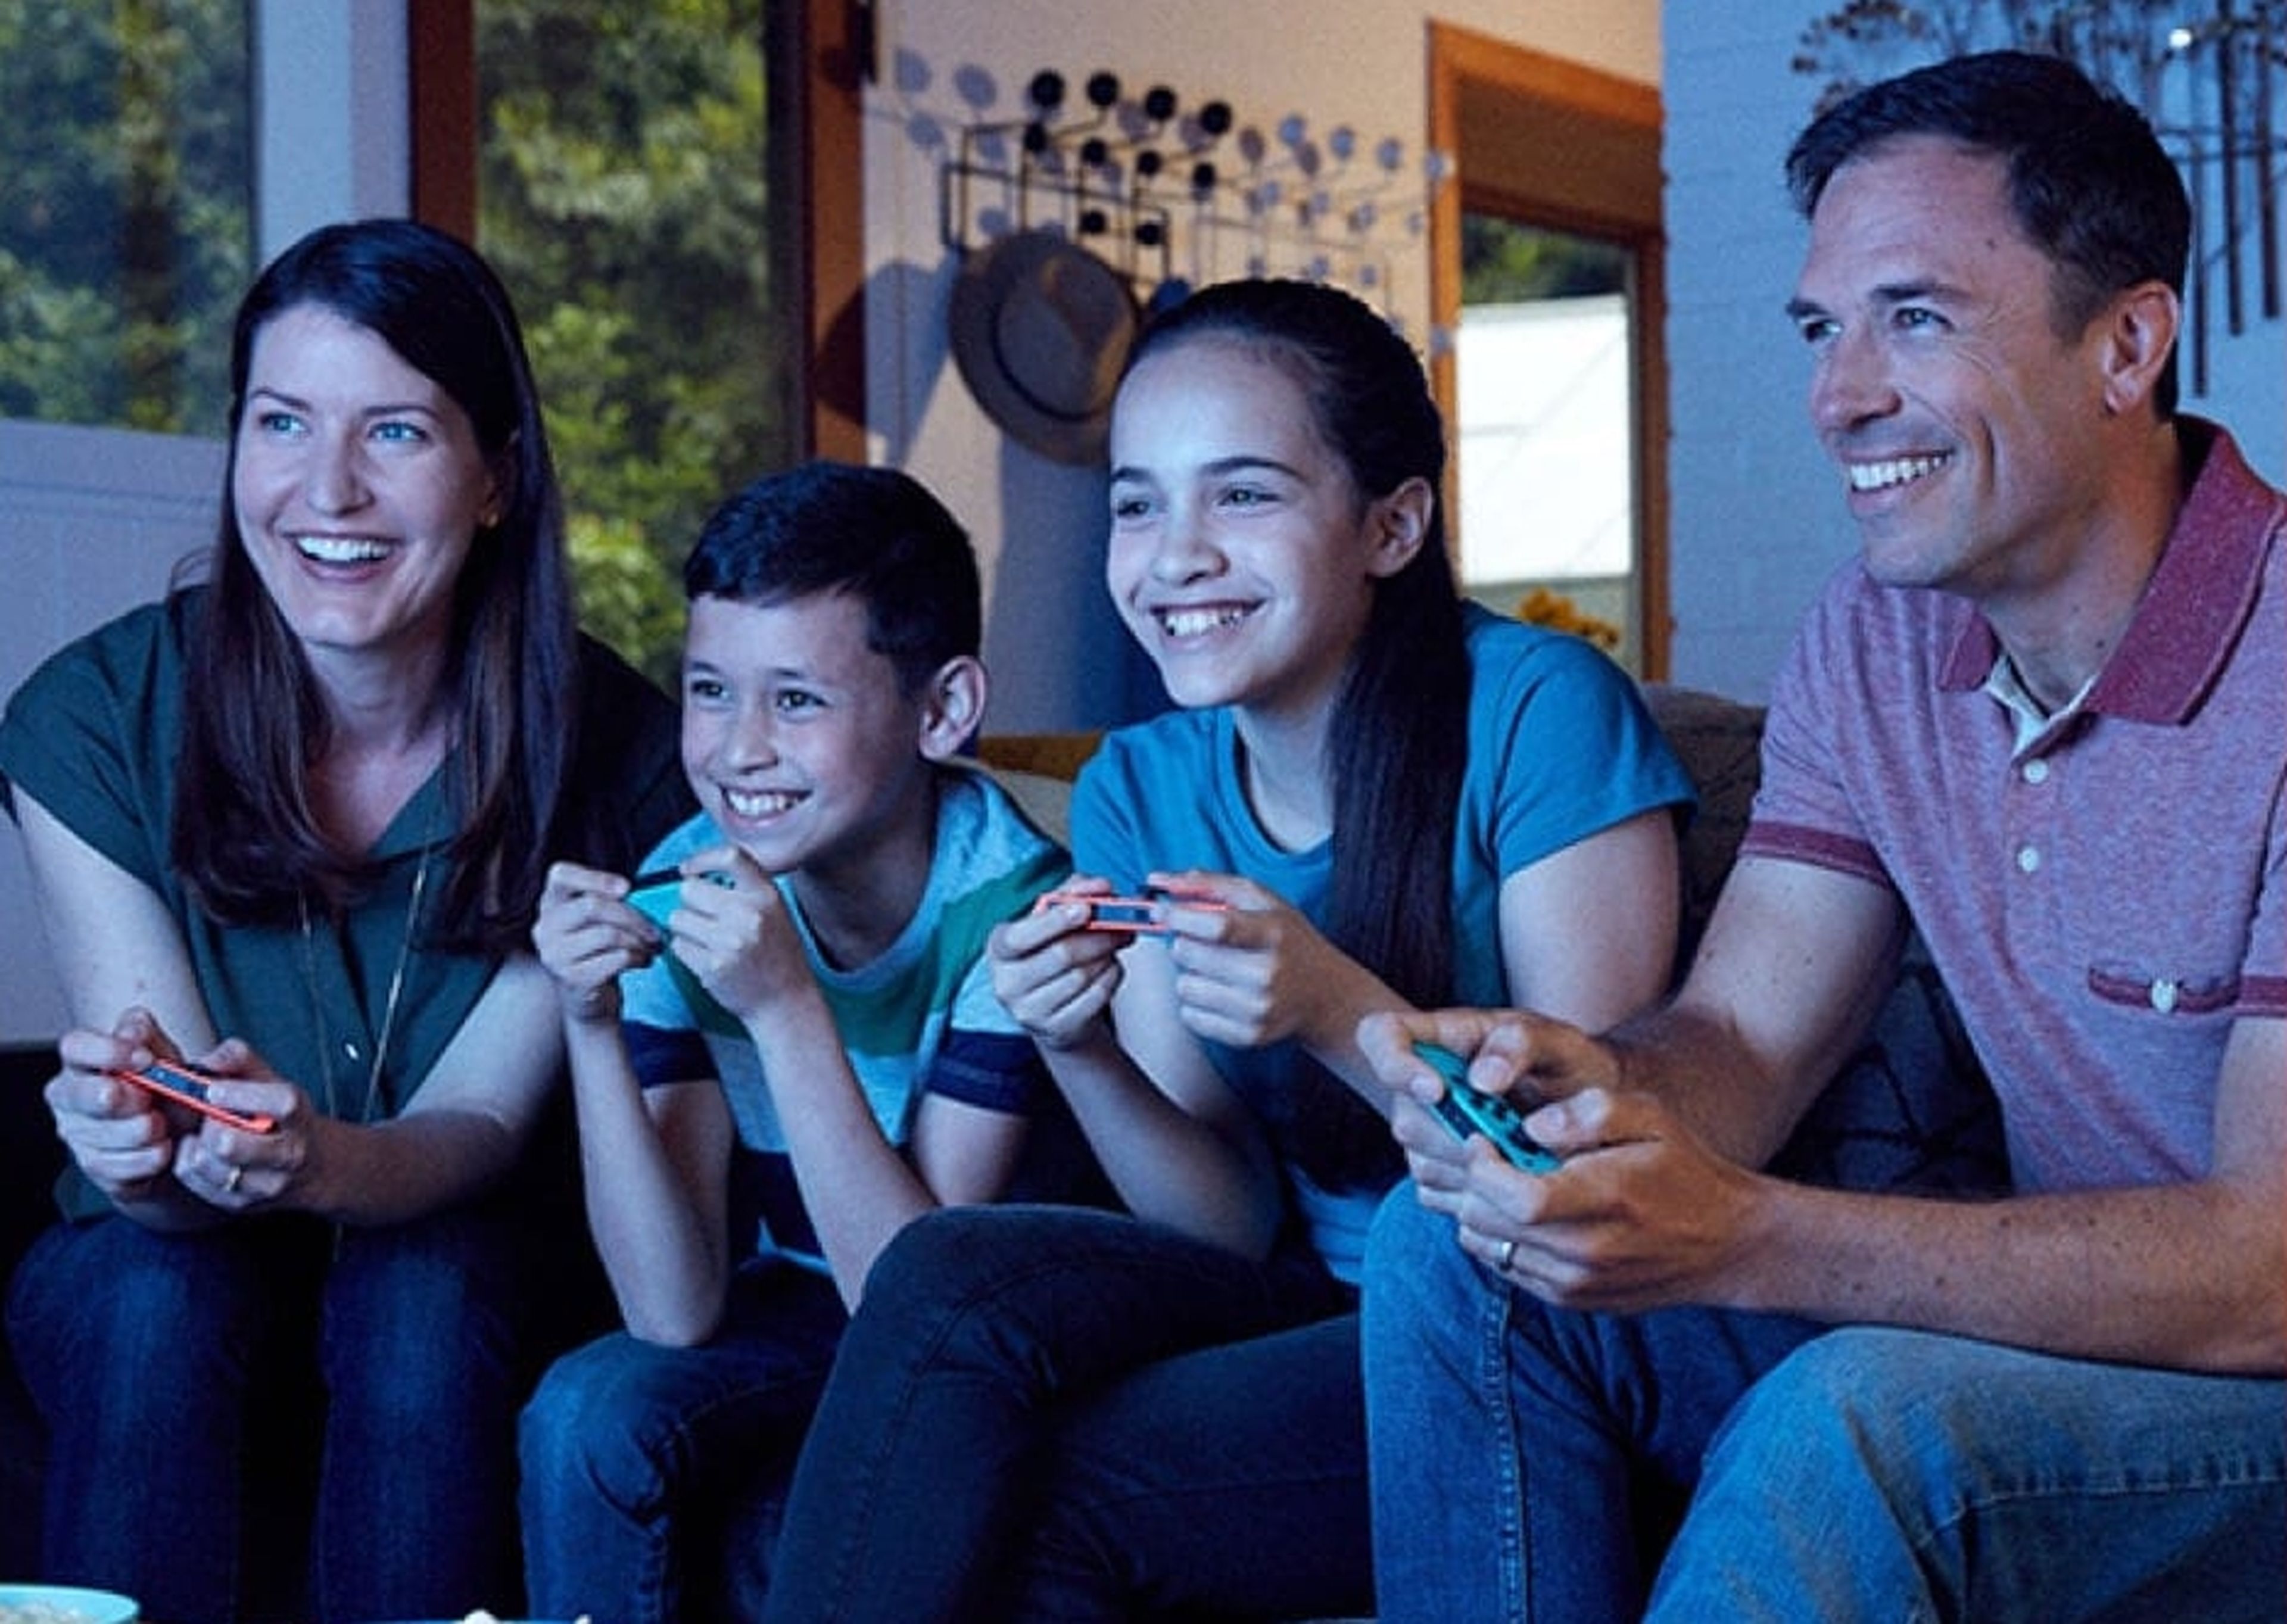 Nintendo revela la edad de los jugadores de Nintendo Switch, y los de 41 años superan a los menores de edad, entre otras curiosidades